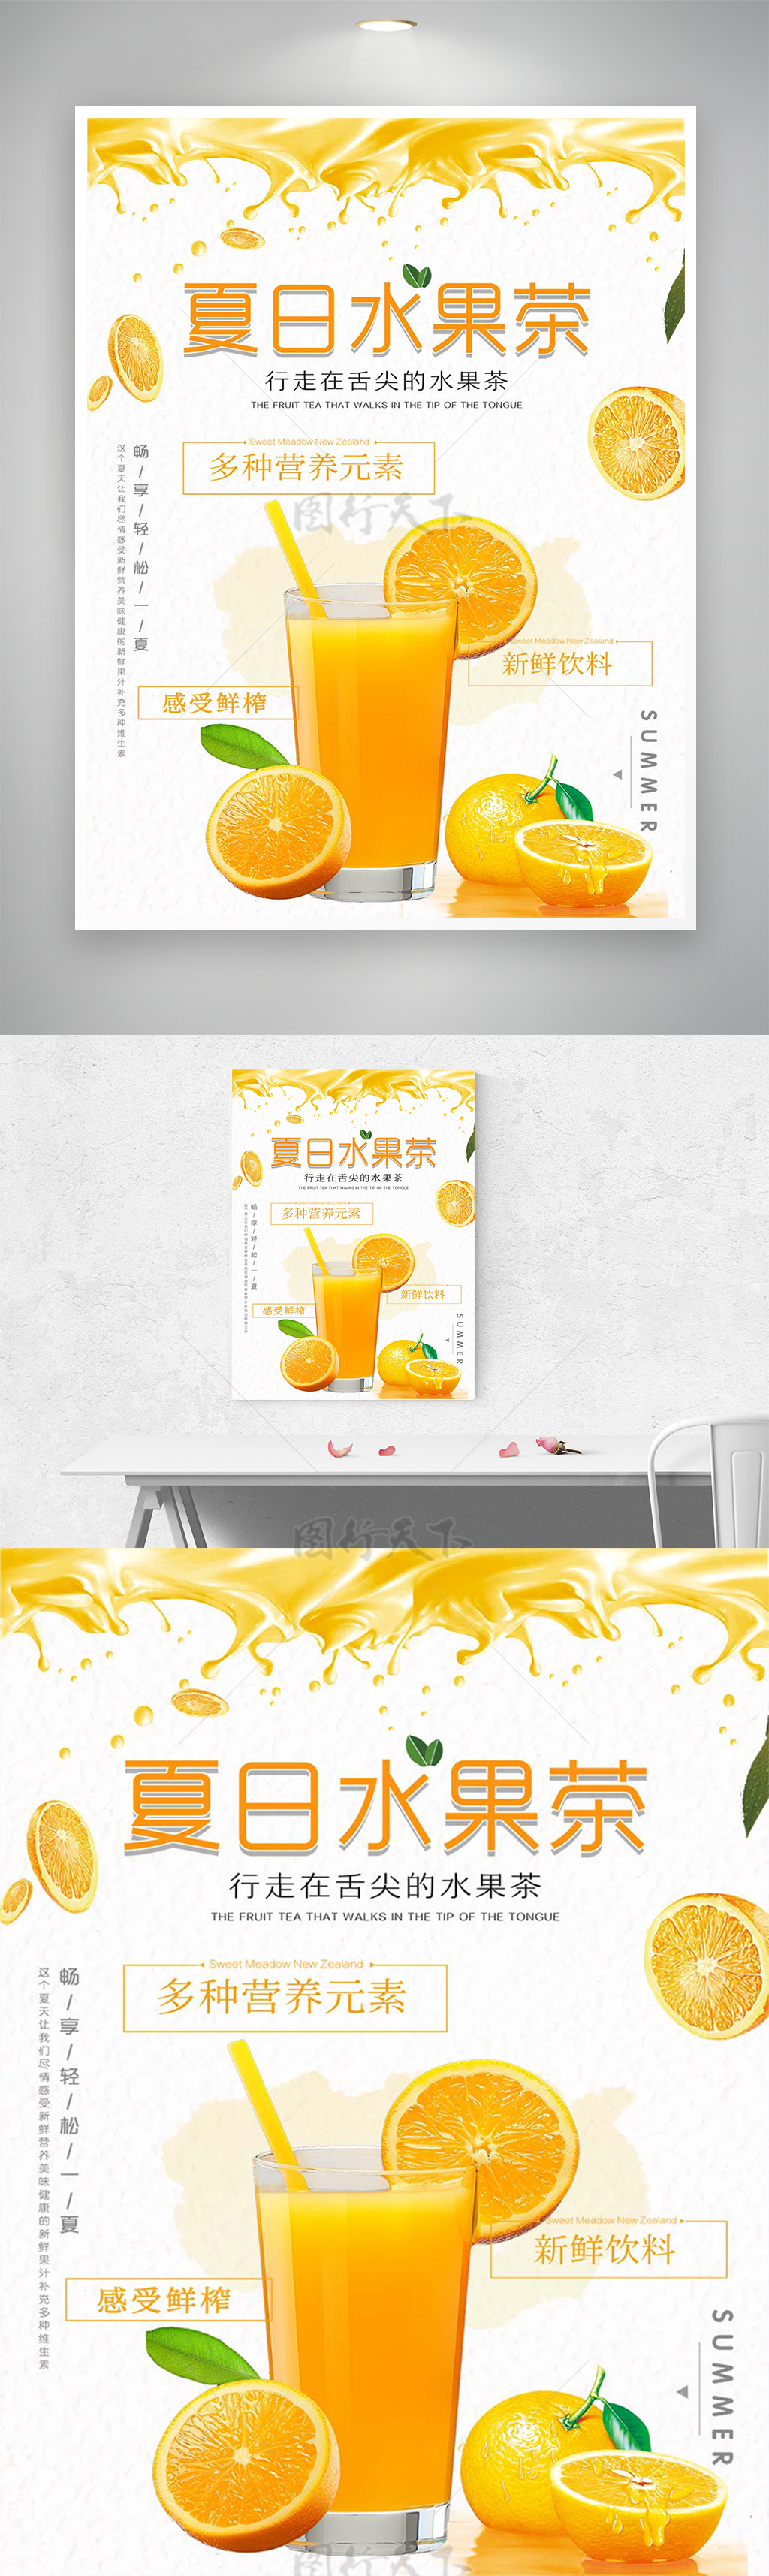 夏日水果茶饮料创意宣传海报